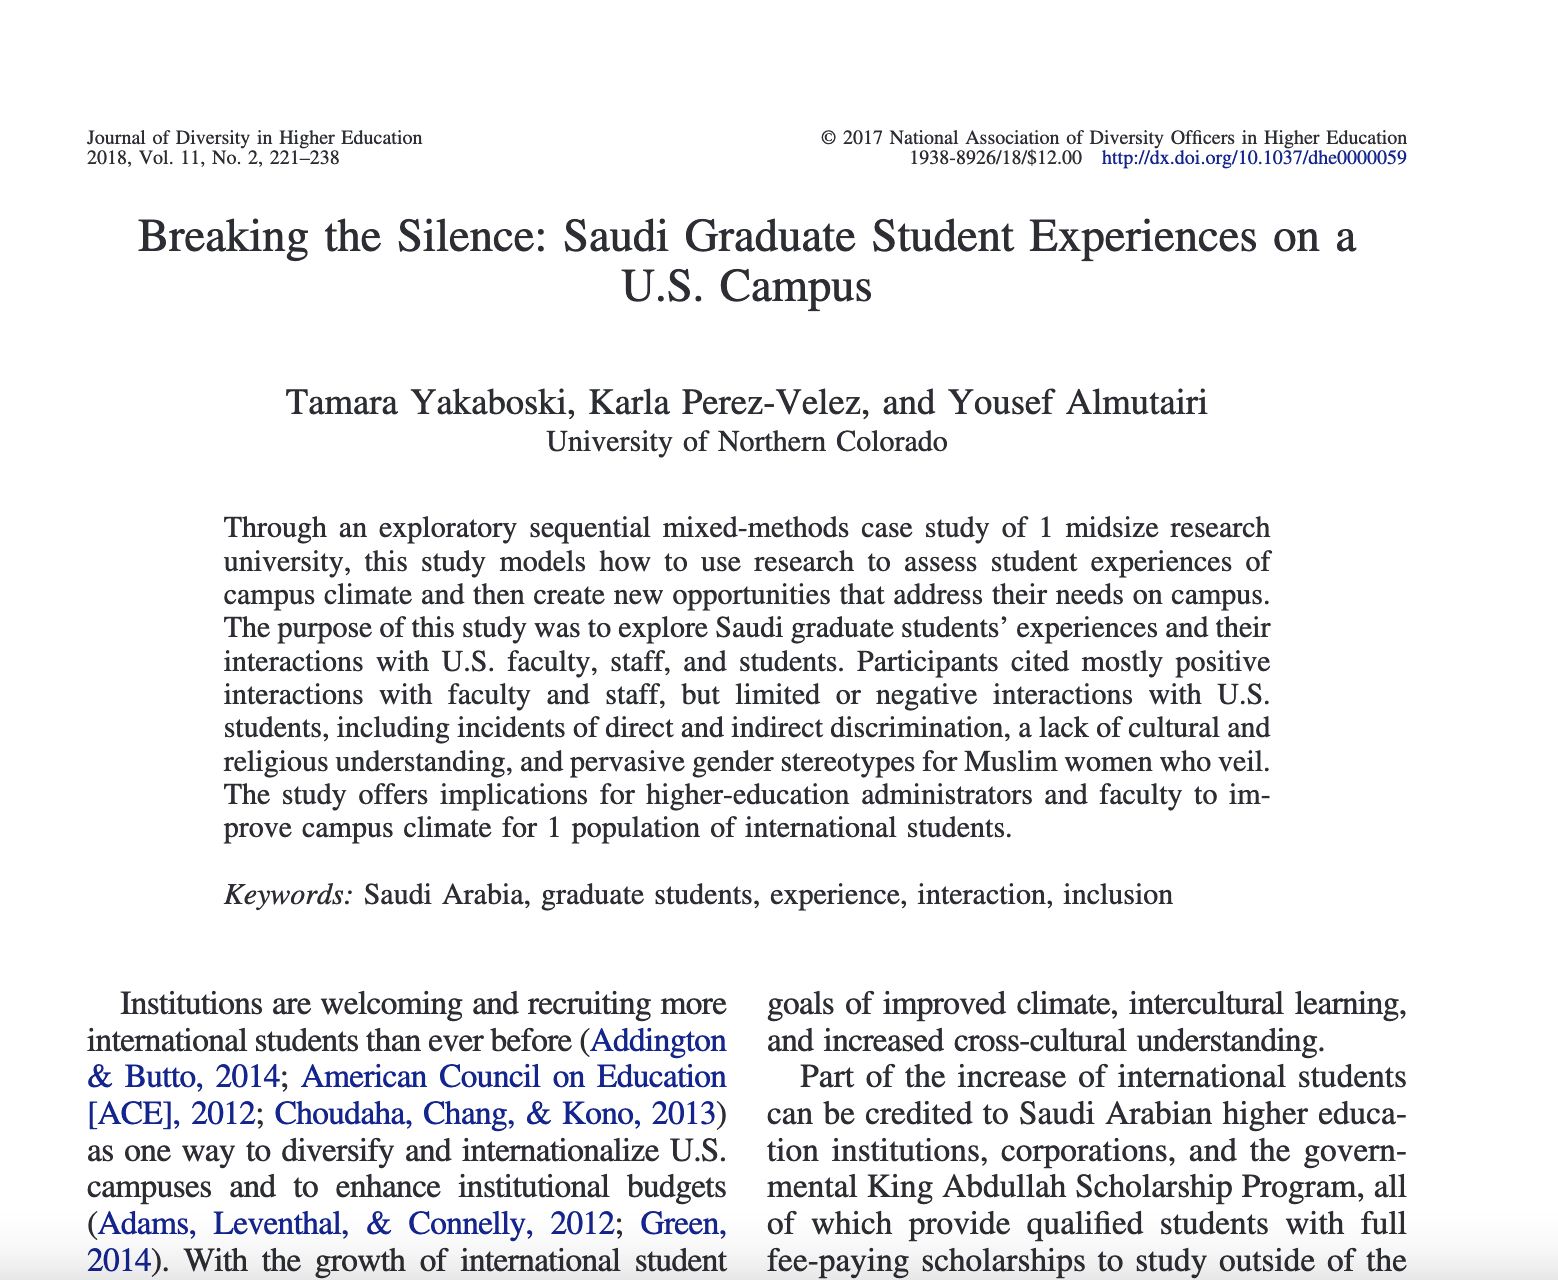 Saudi graduate student experiences on a U.S. campus